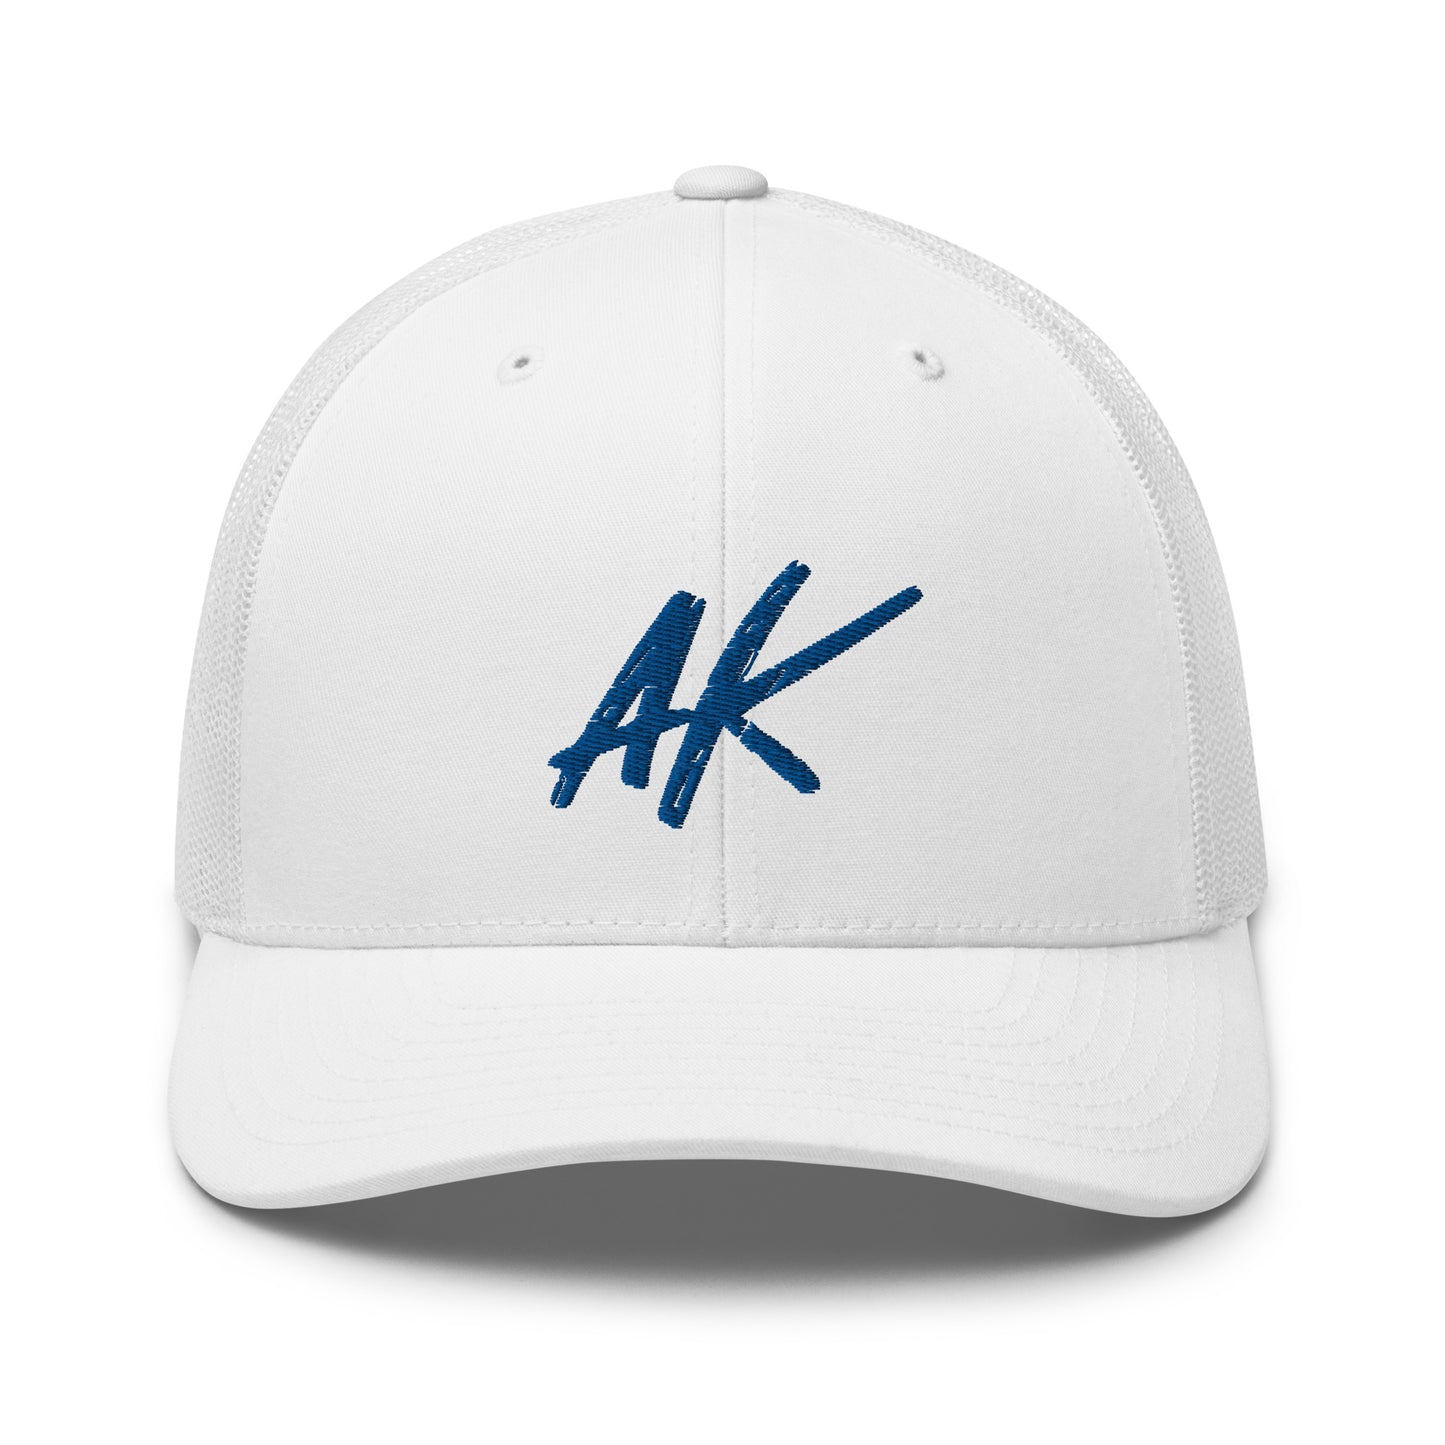 AK snapback (blue)